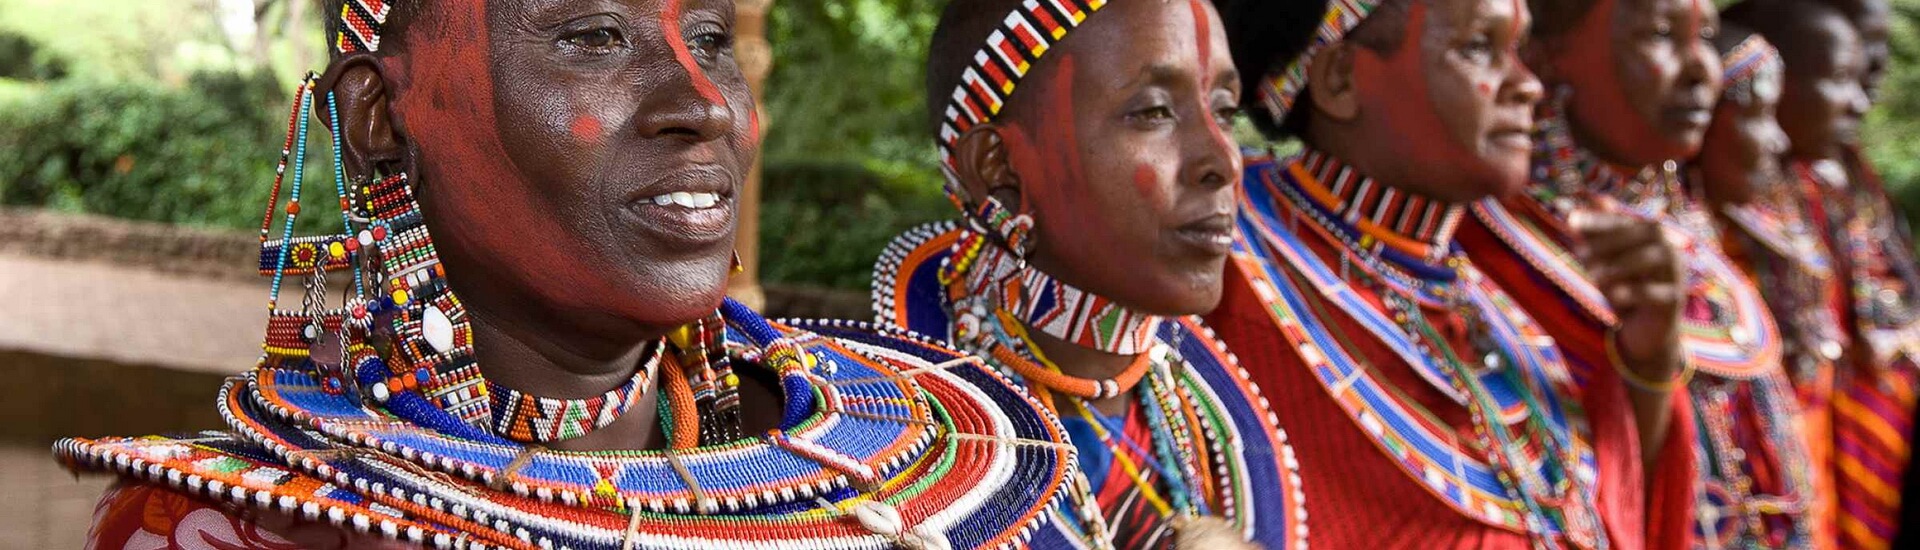 Nyika Discovery - Tanzania people